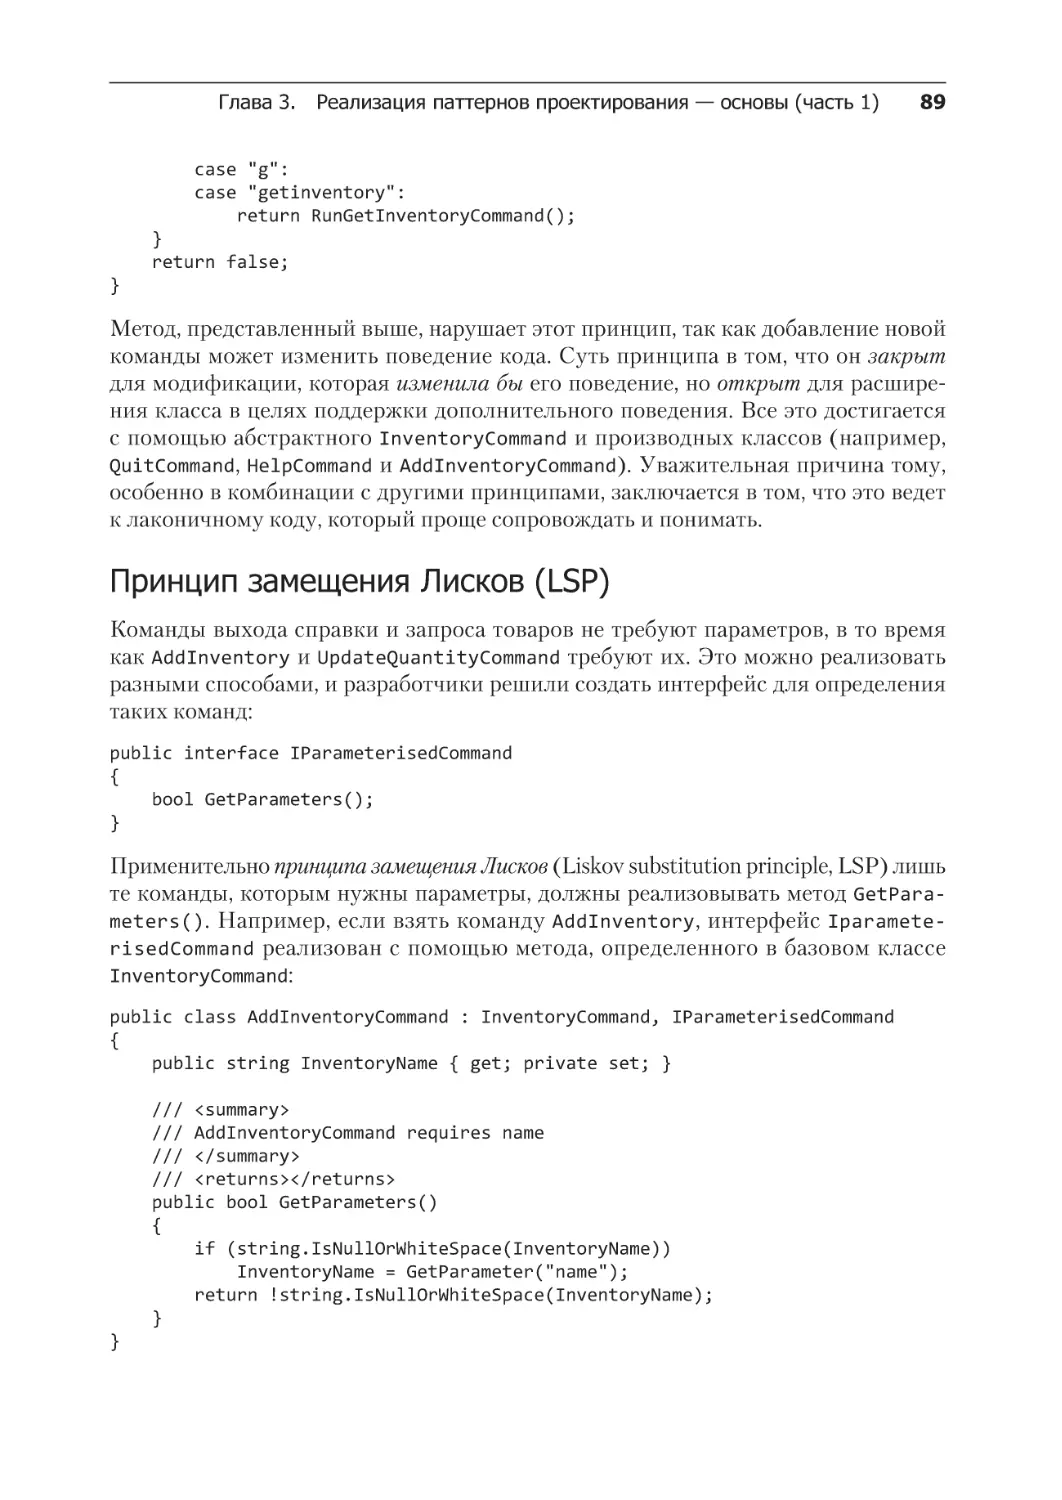 Принцип замещения Лисков (LSP)